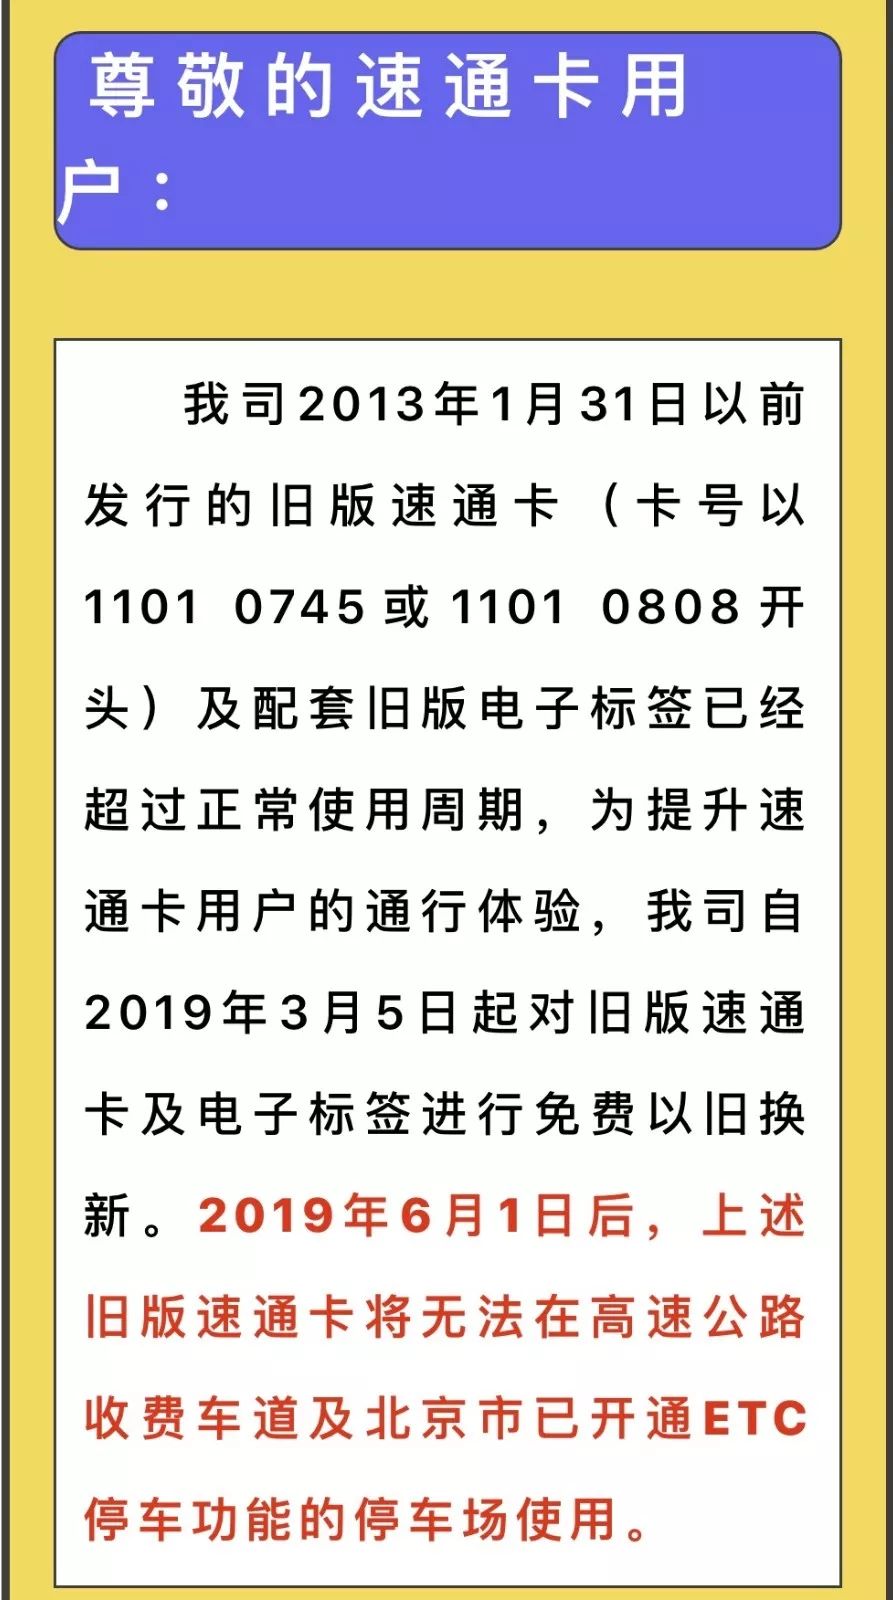 首发集团速通公司发布公告北京旧版速通卡将无法使用!